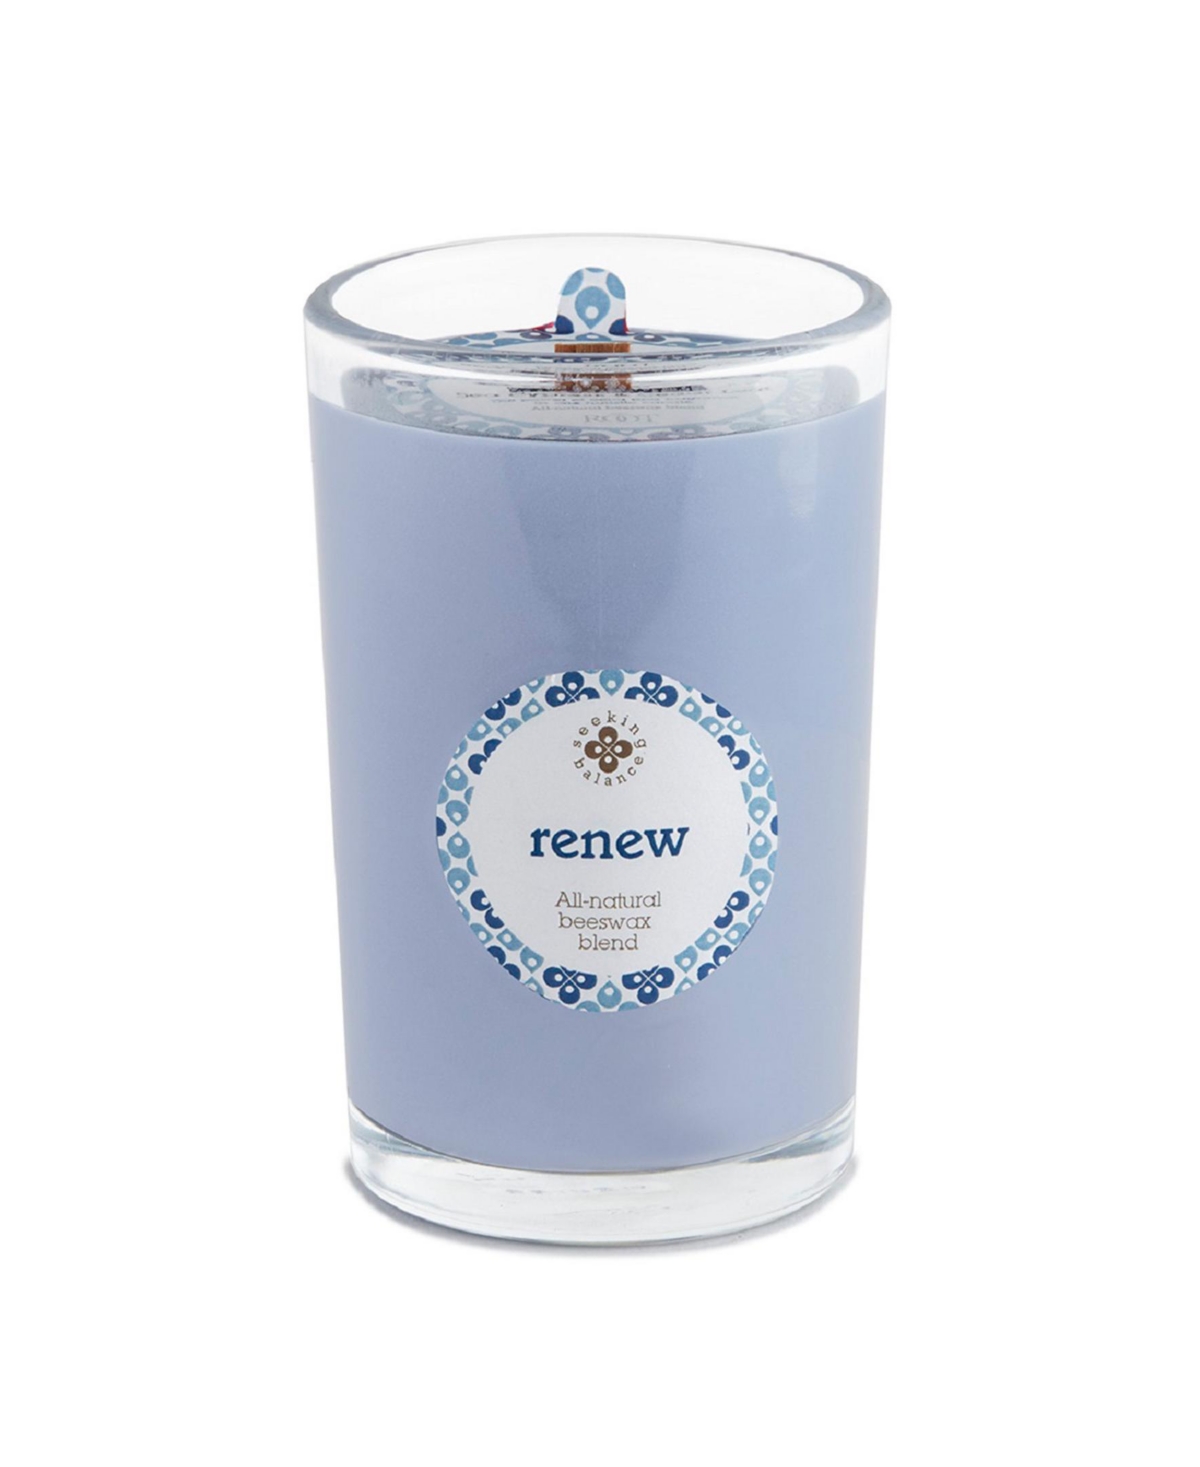 Seeking Balance Renew Seaside Cypress Cedar leaf Spa Jar Candle, 8 oz - Blue